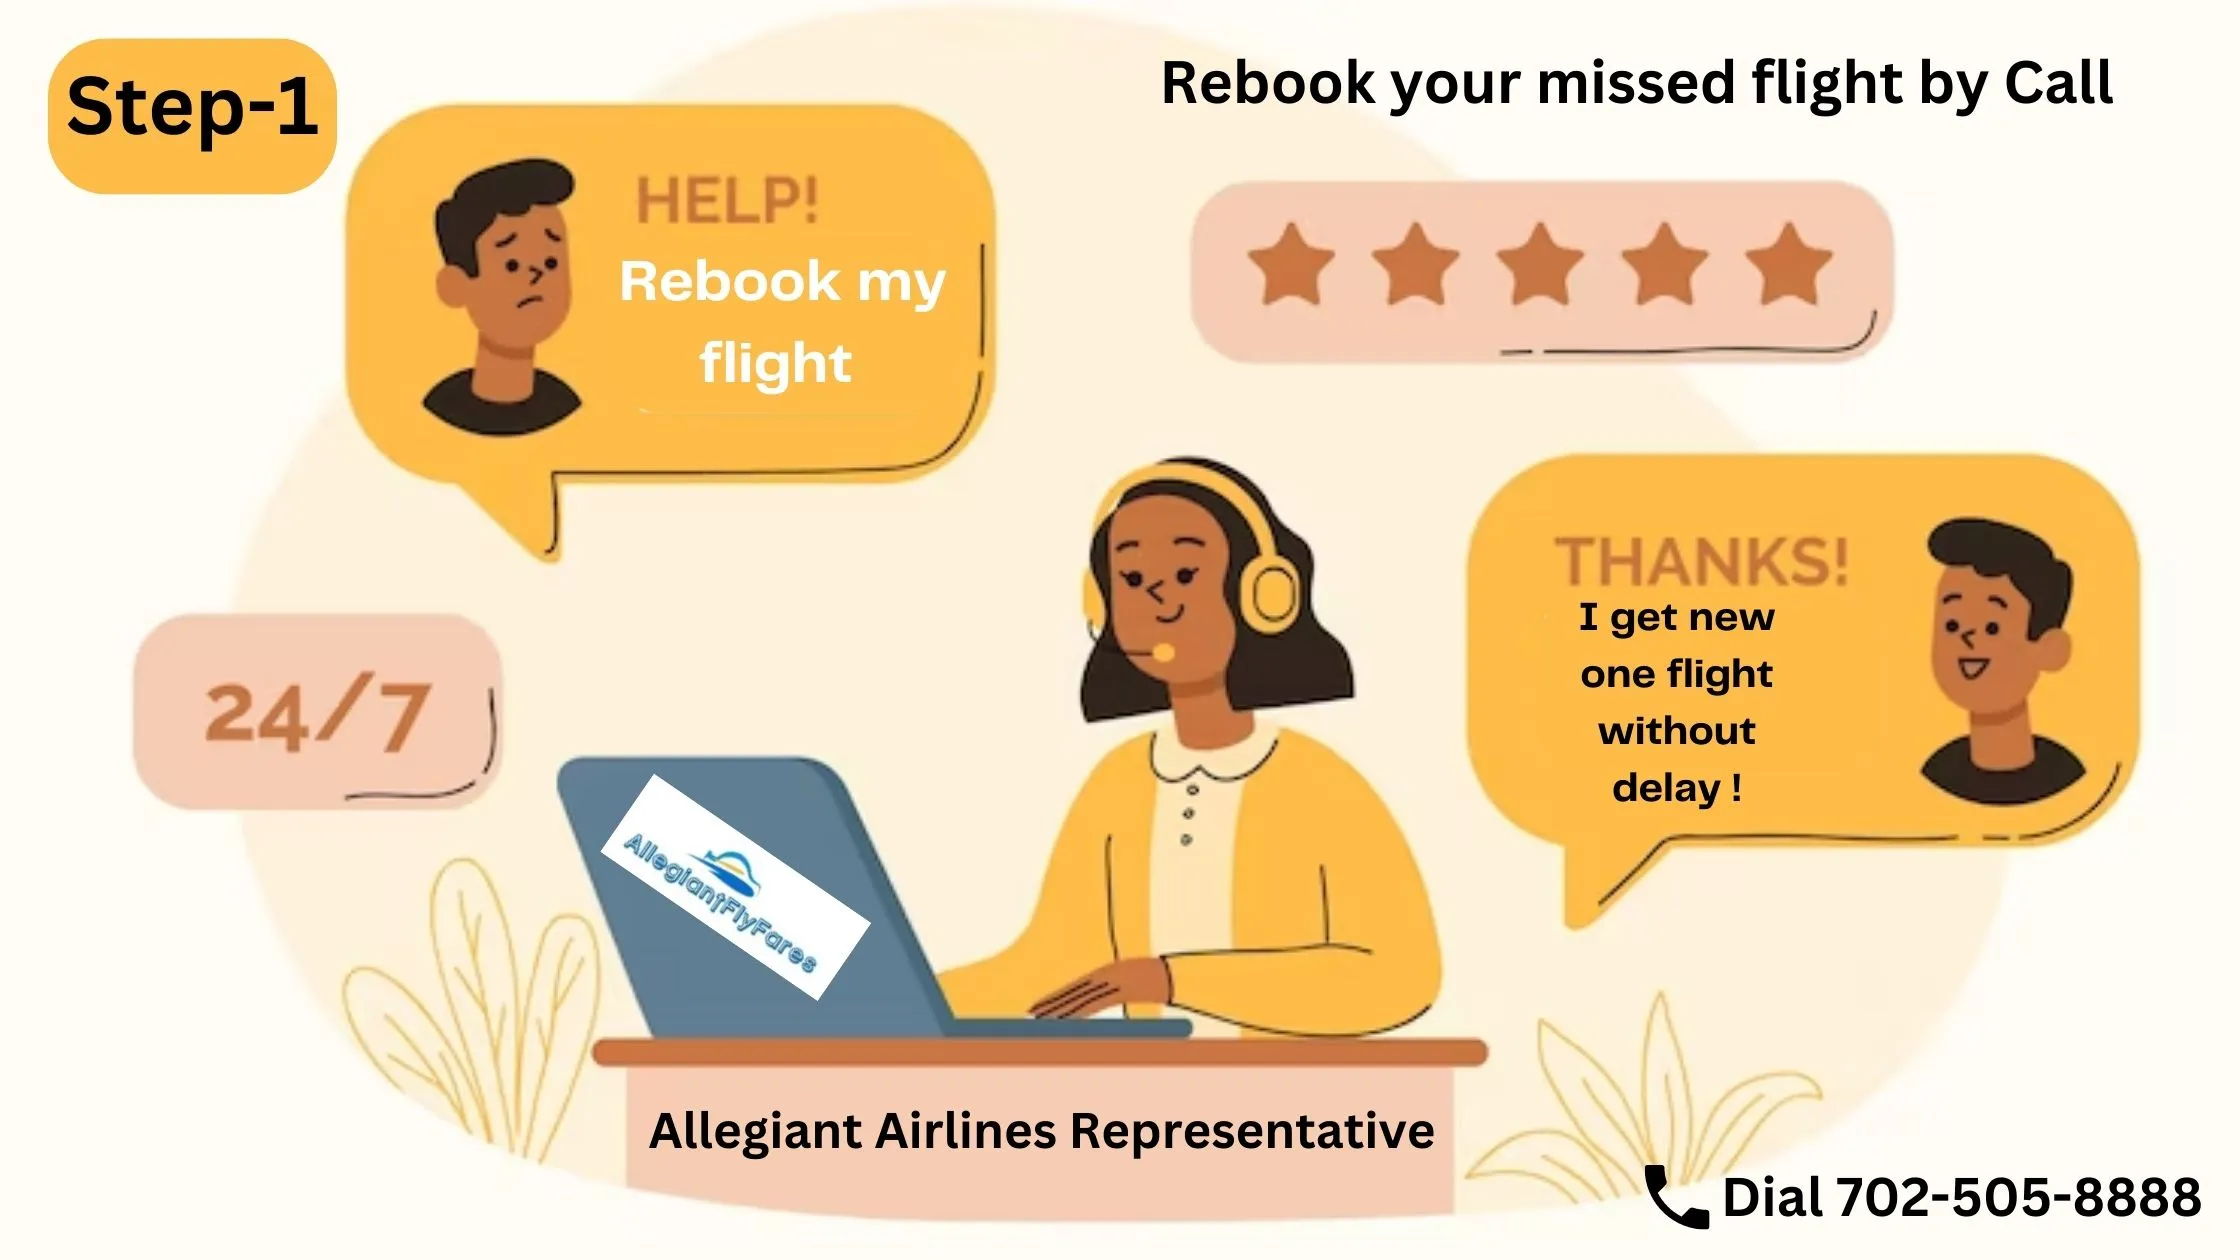 Calling Allegiant Airlines Representative